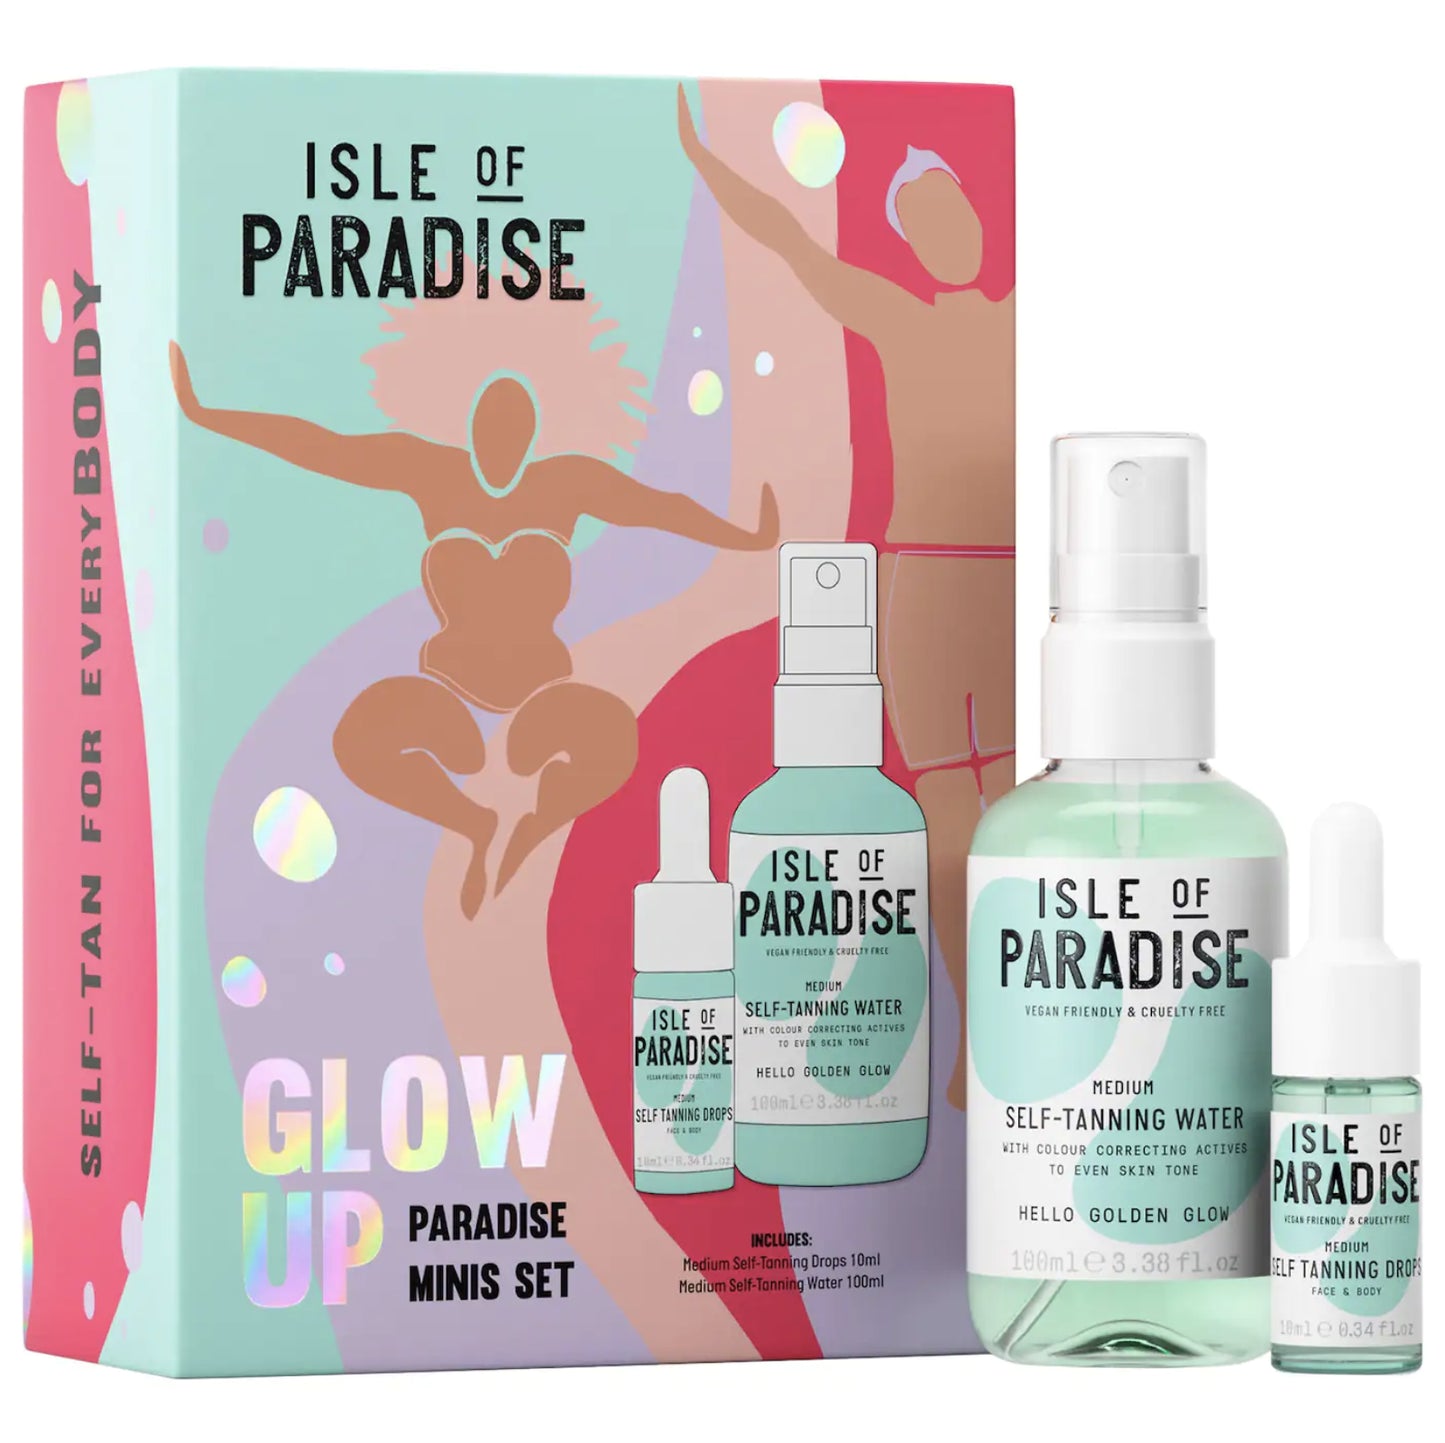 Glow Up Paradise Minis Set